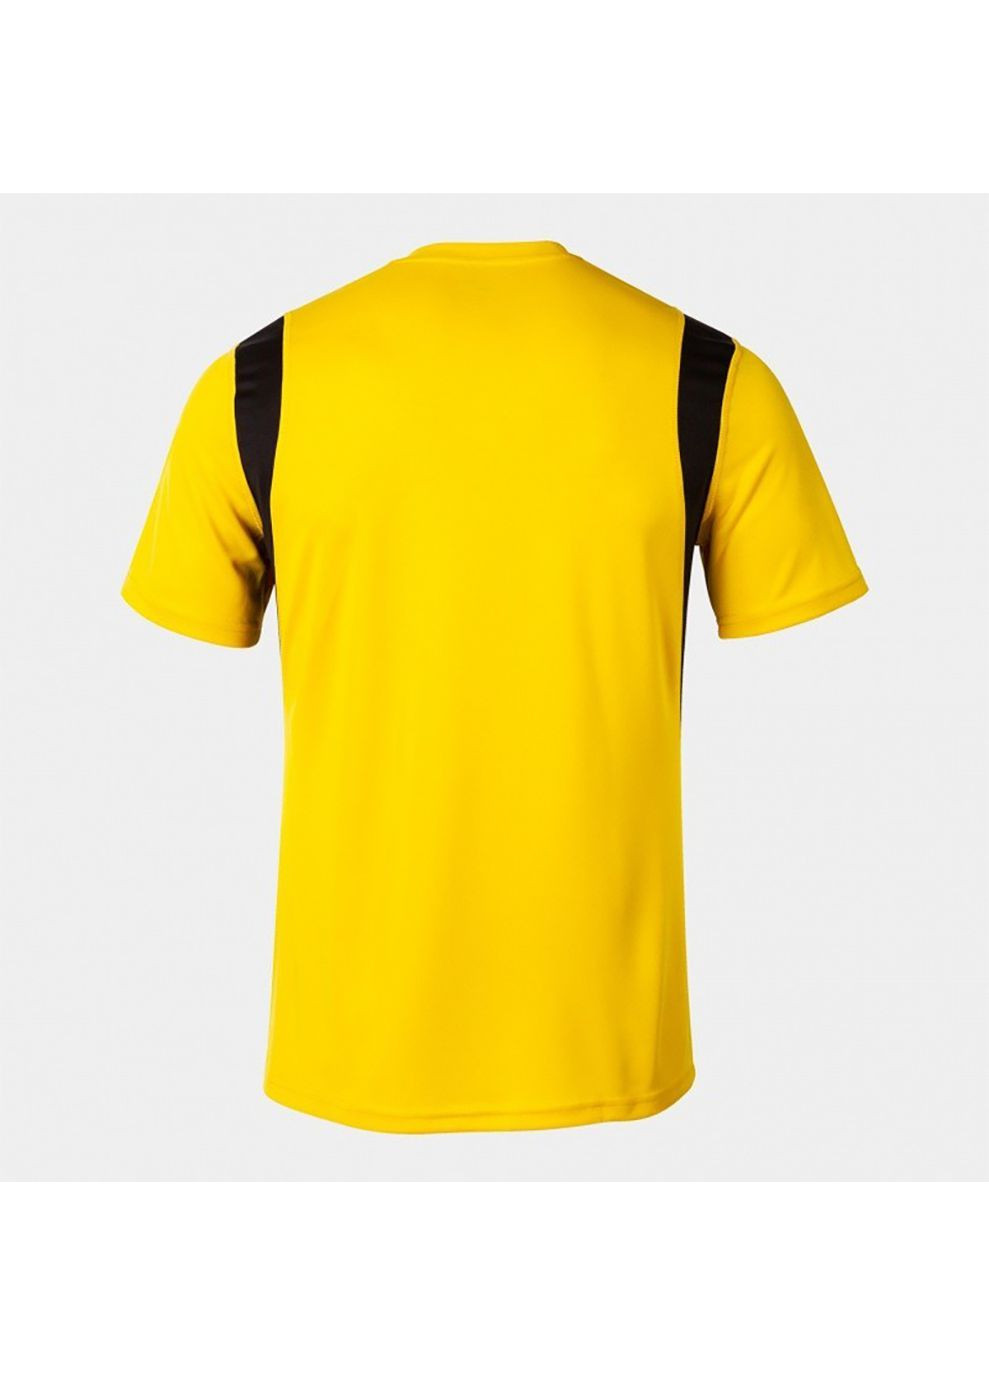 Желтая футболка t-shirt dinamo yellow s/s желтый 100446.900 Joma